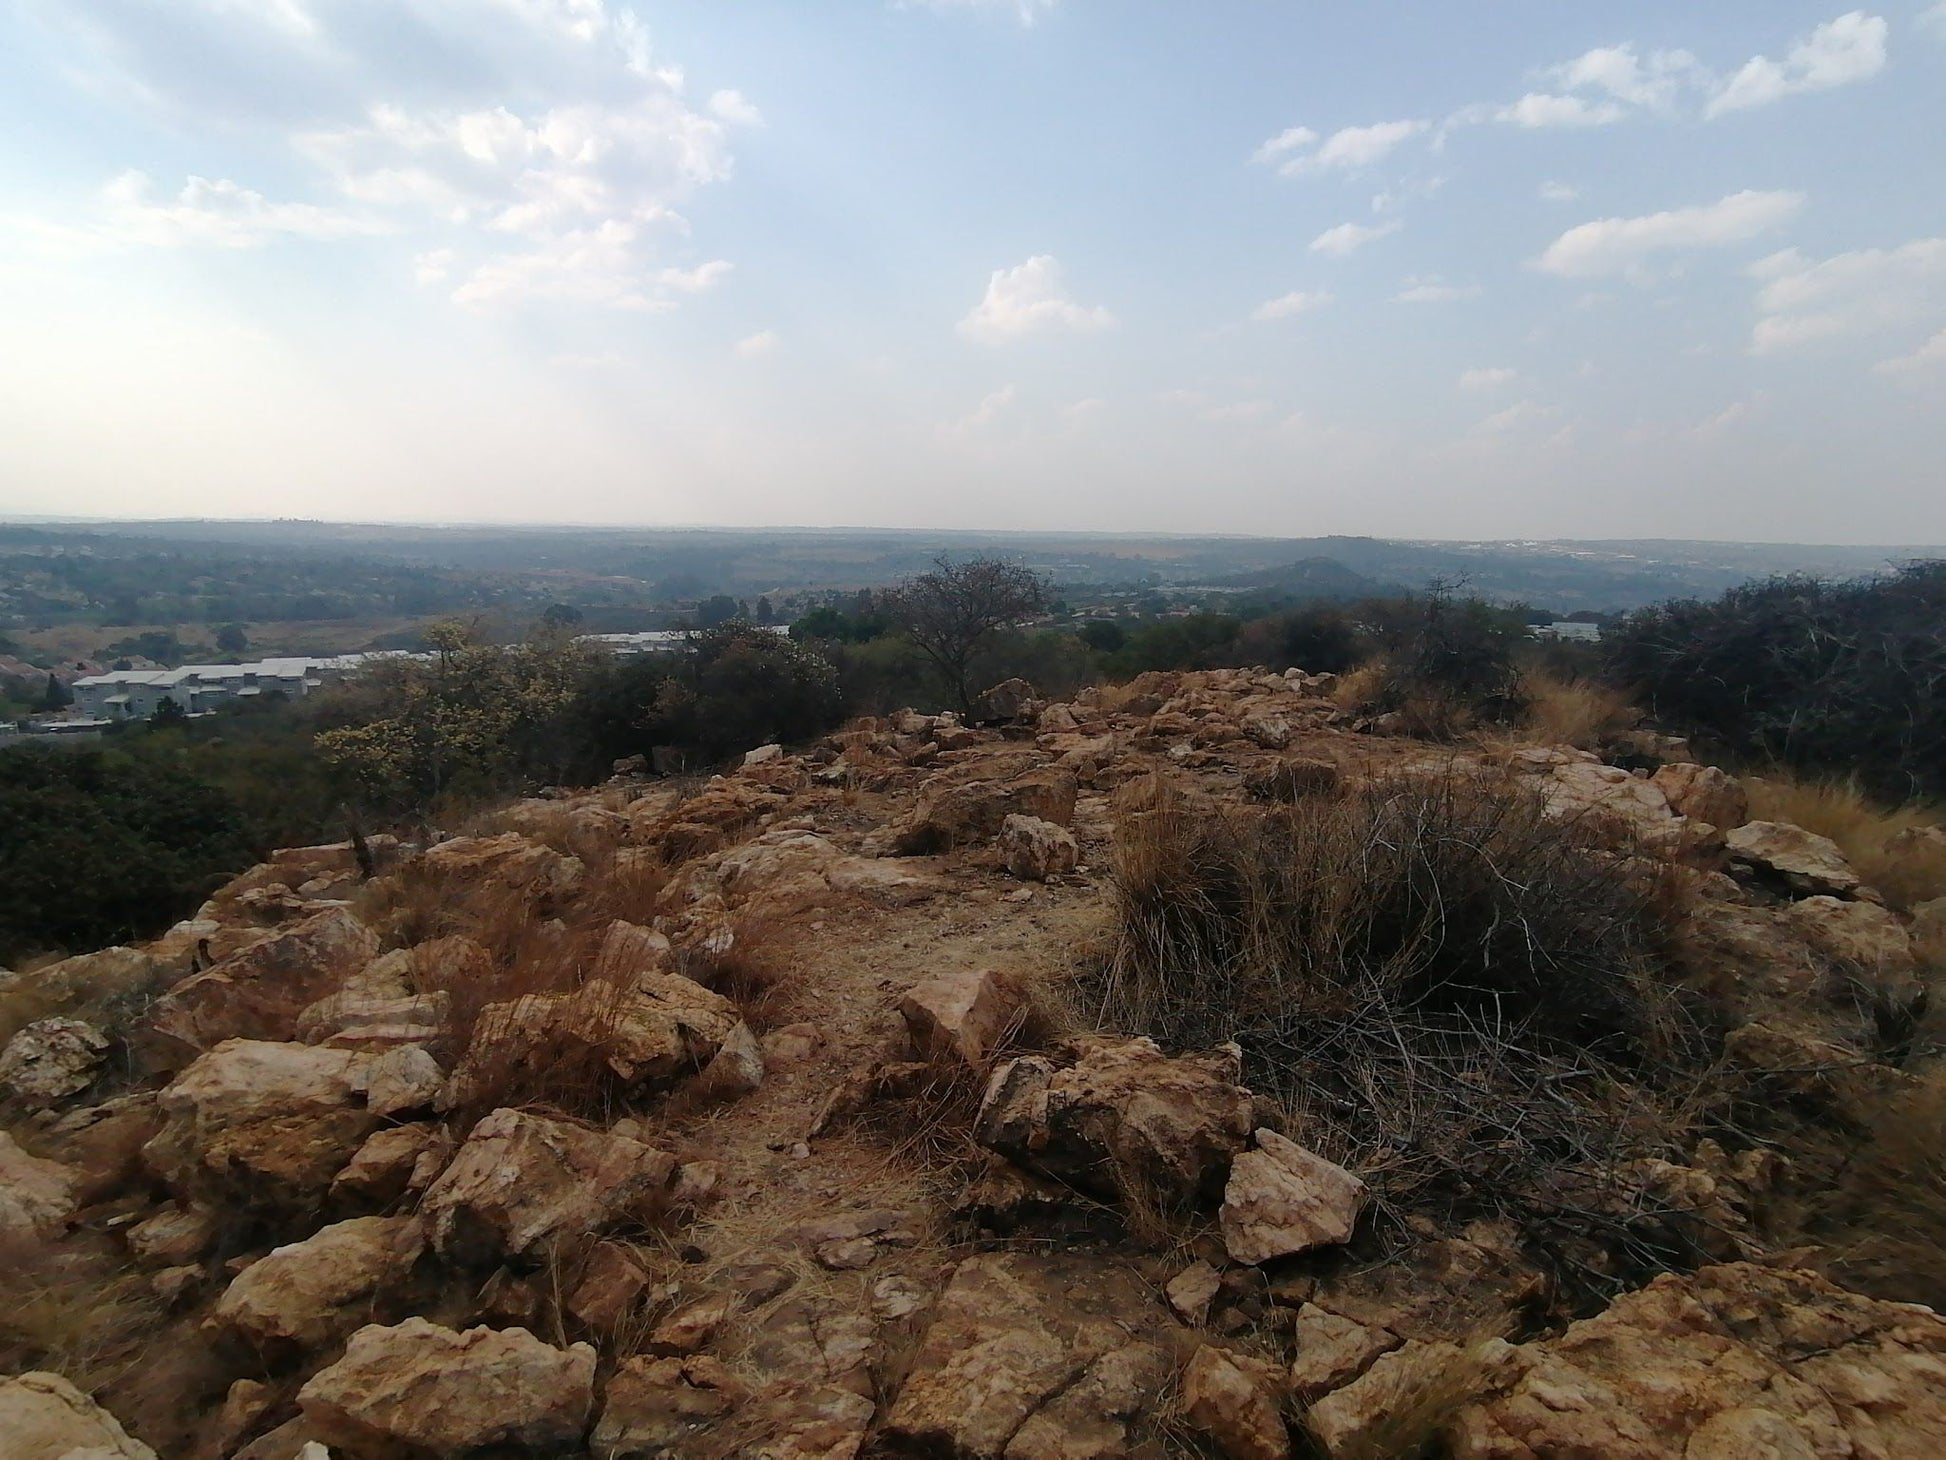  Rietfontein Nature Reserve